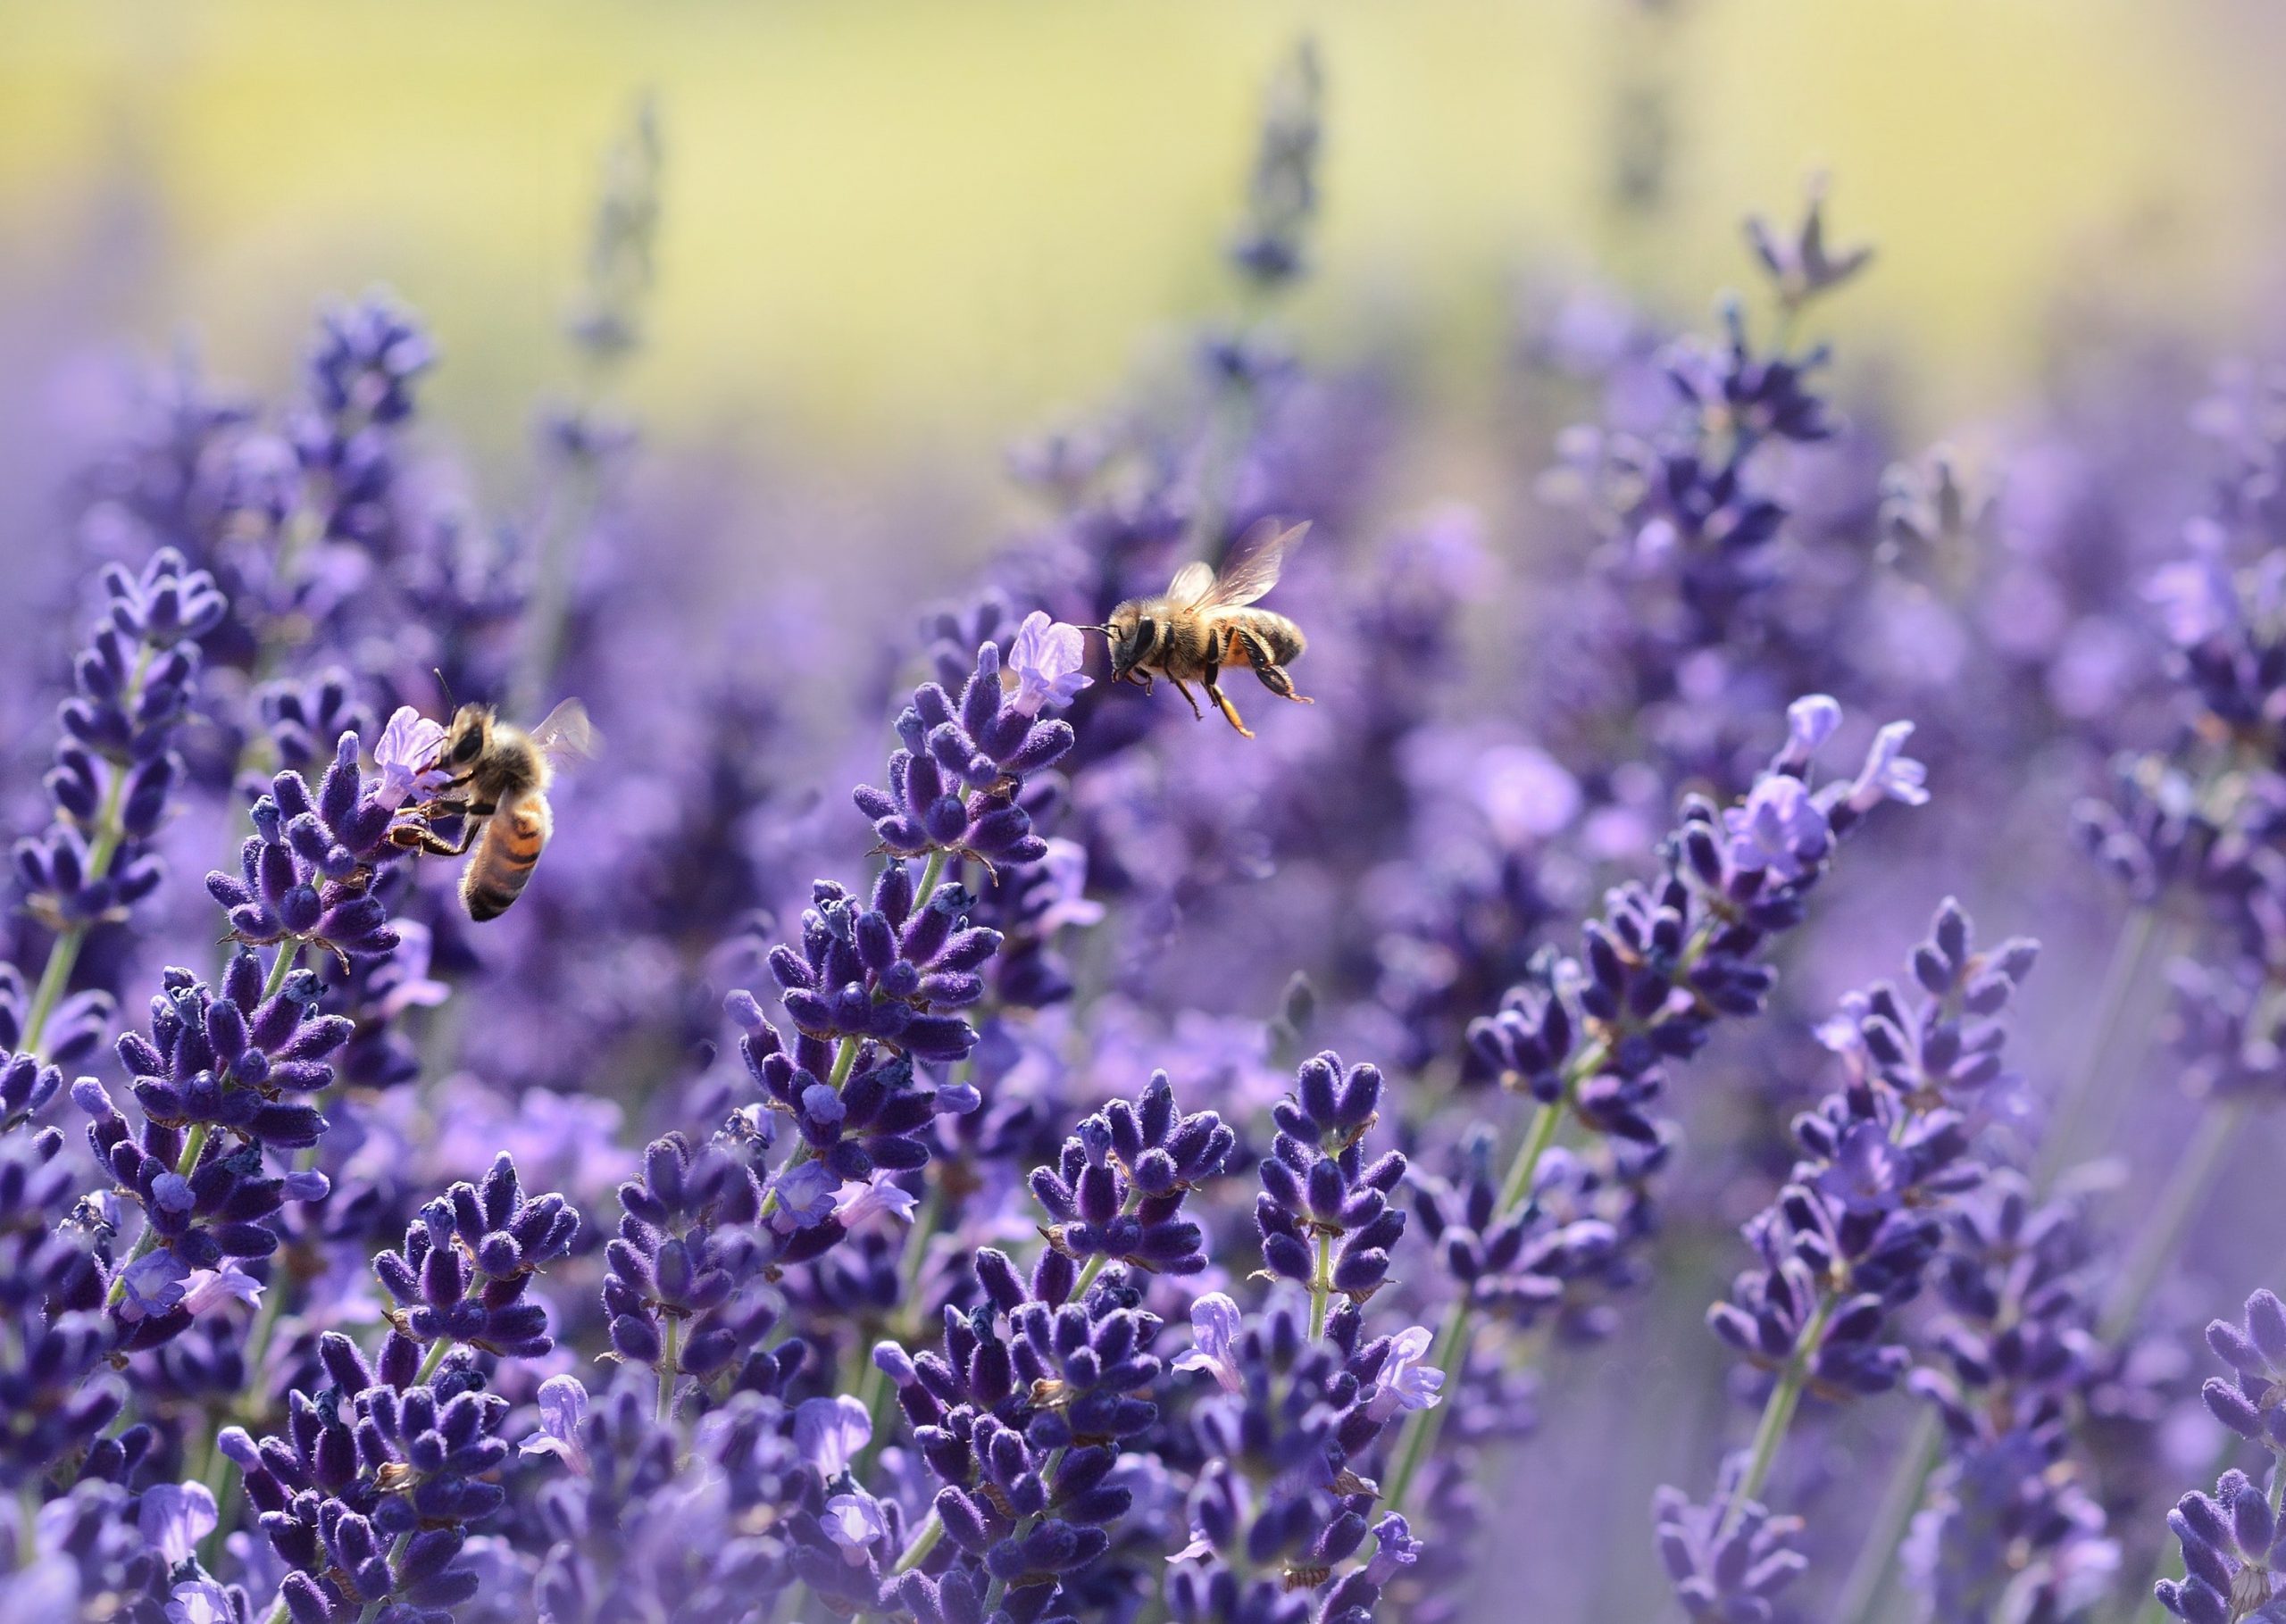 Handbestäubung: Wird die Biene ersetzt?